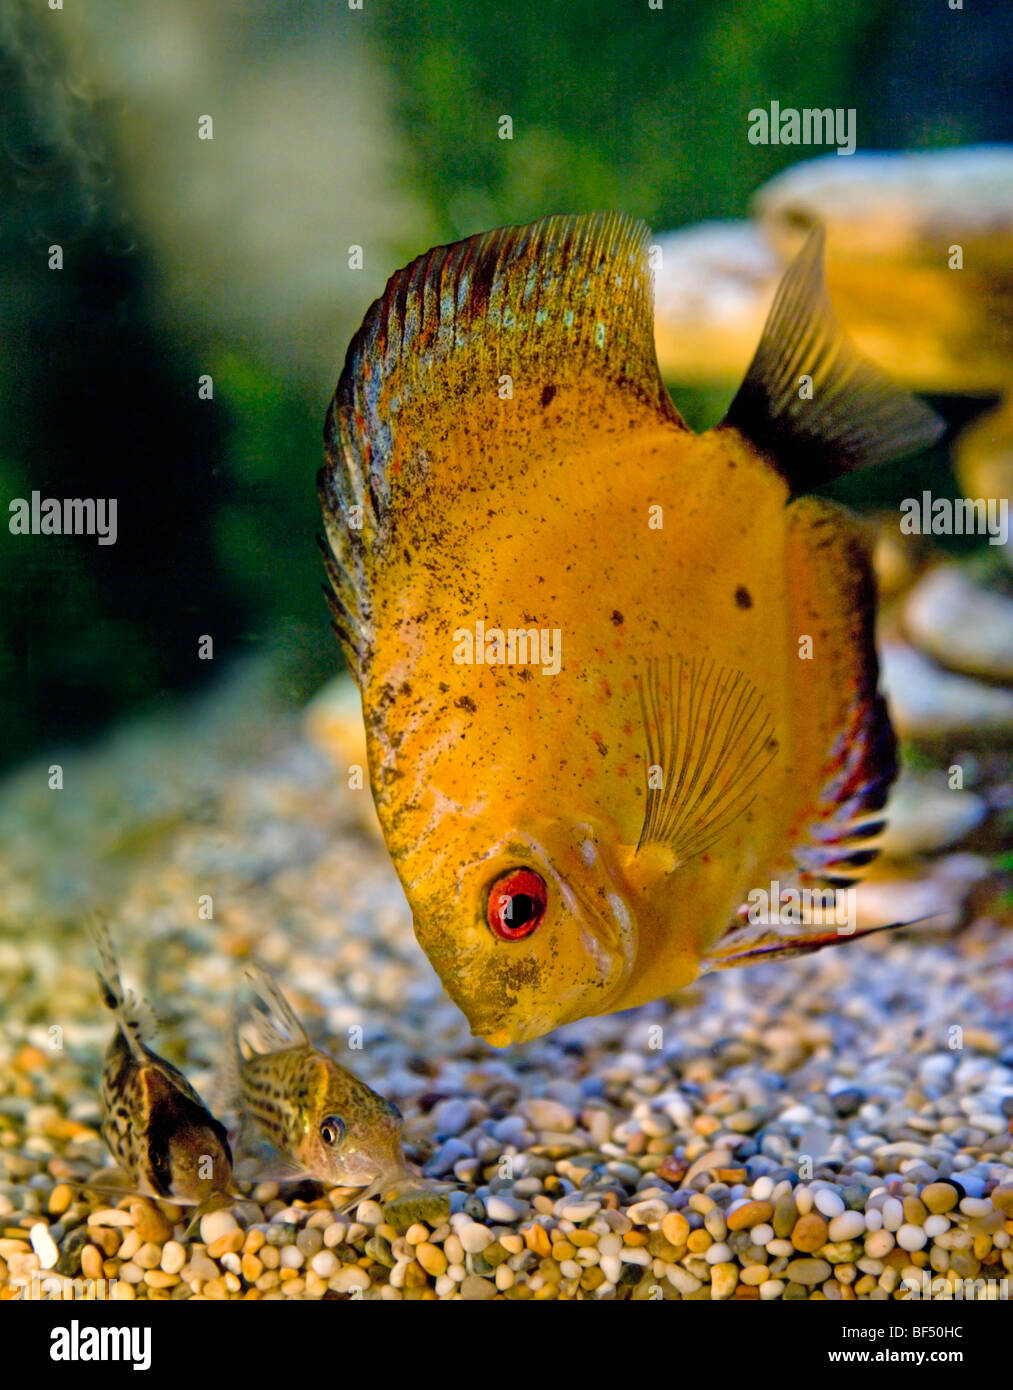 Yellow Discus Fish and Corydora Catfish Stock Photo